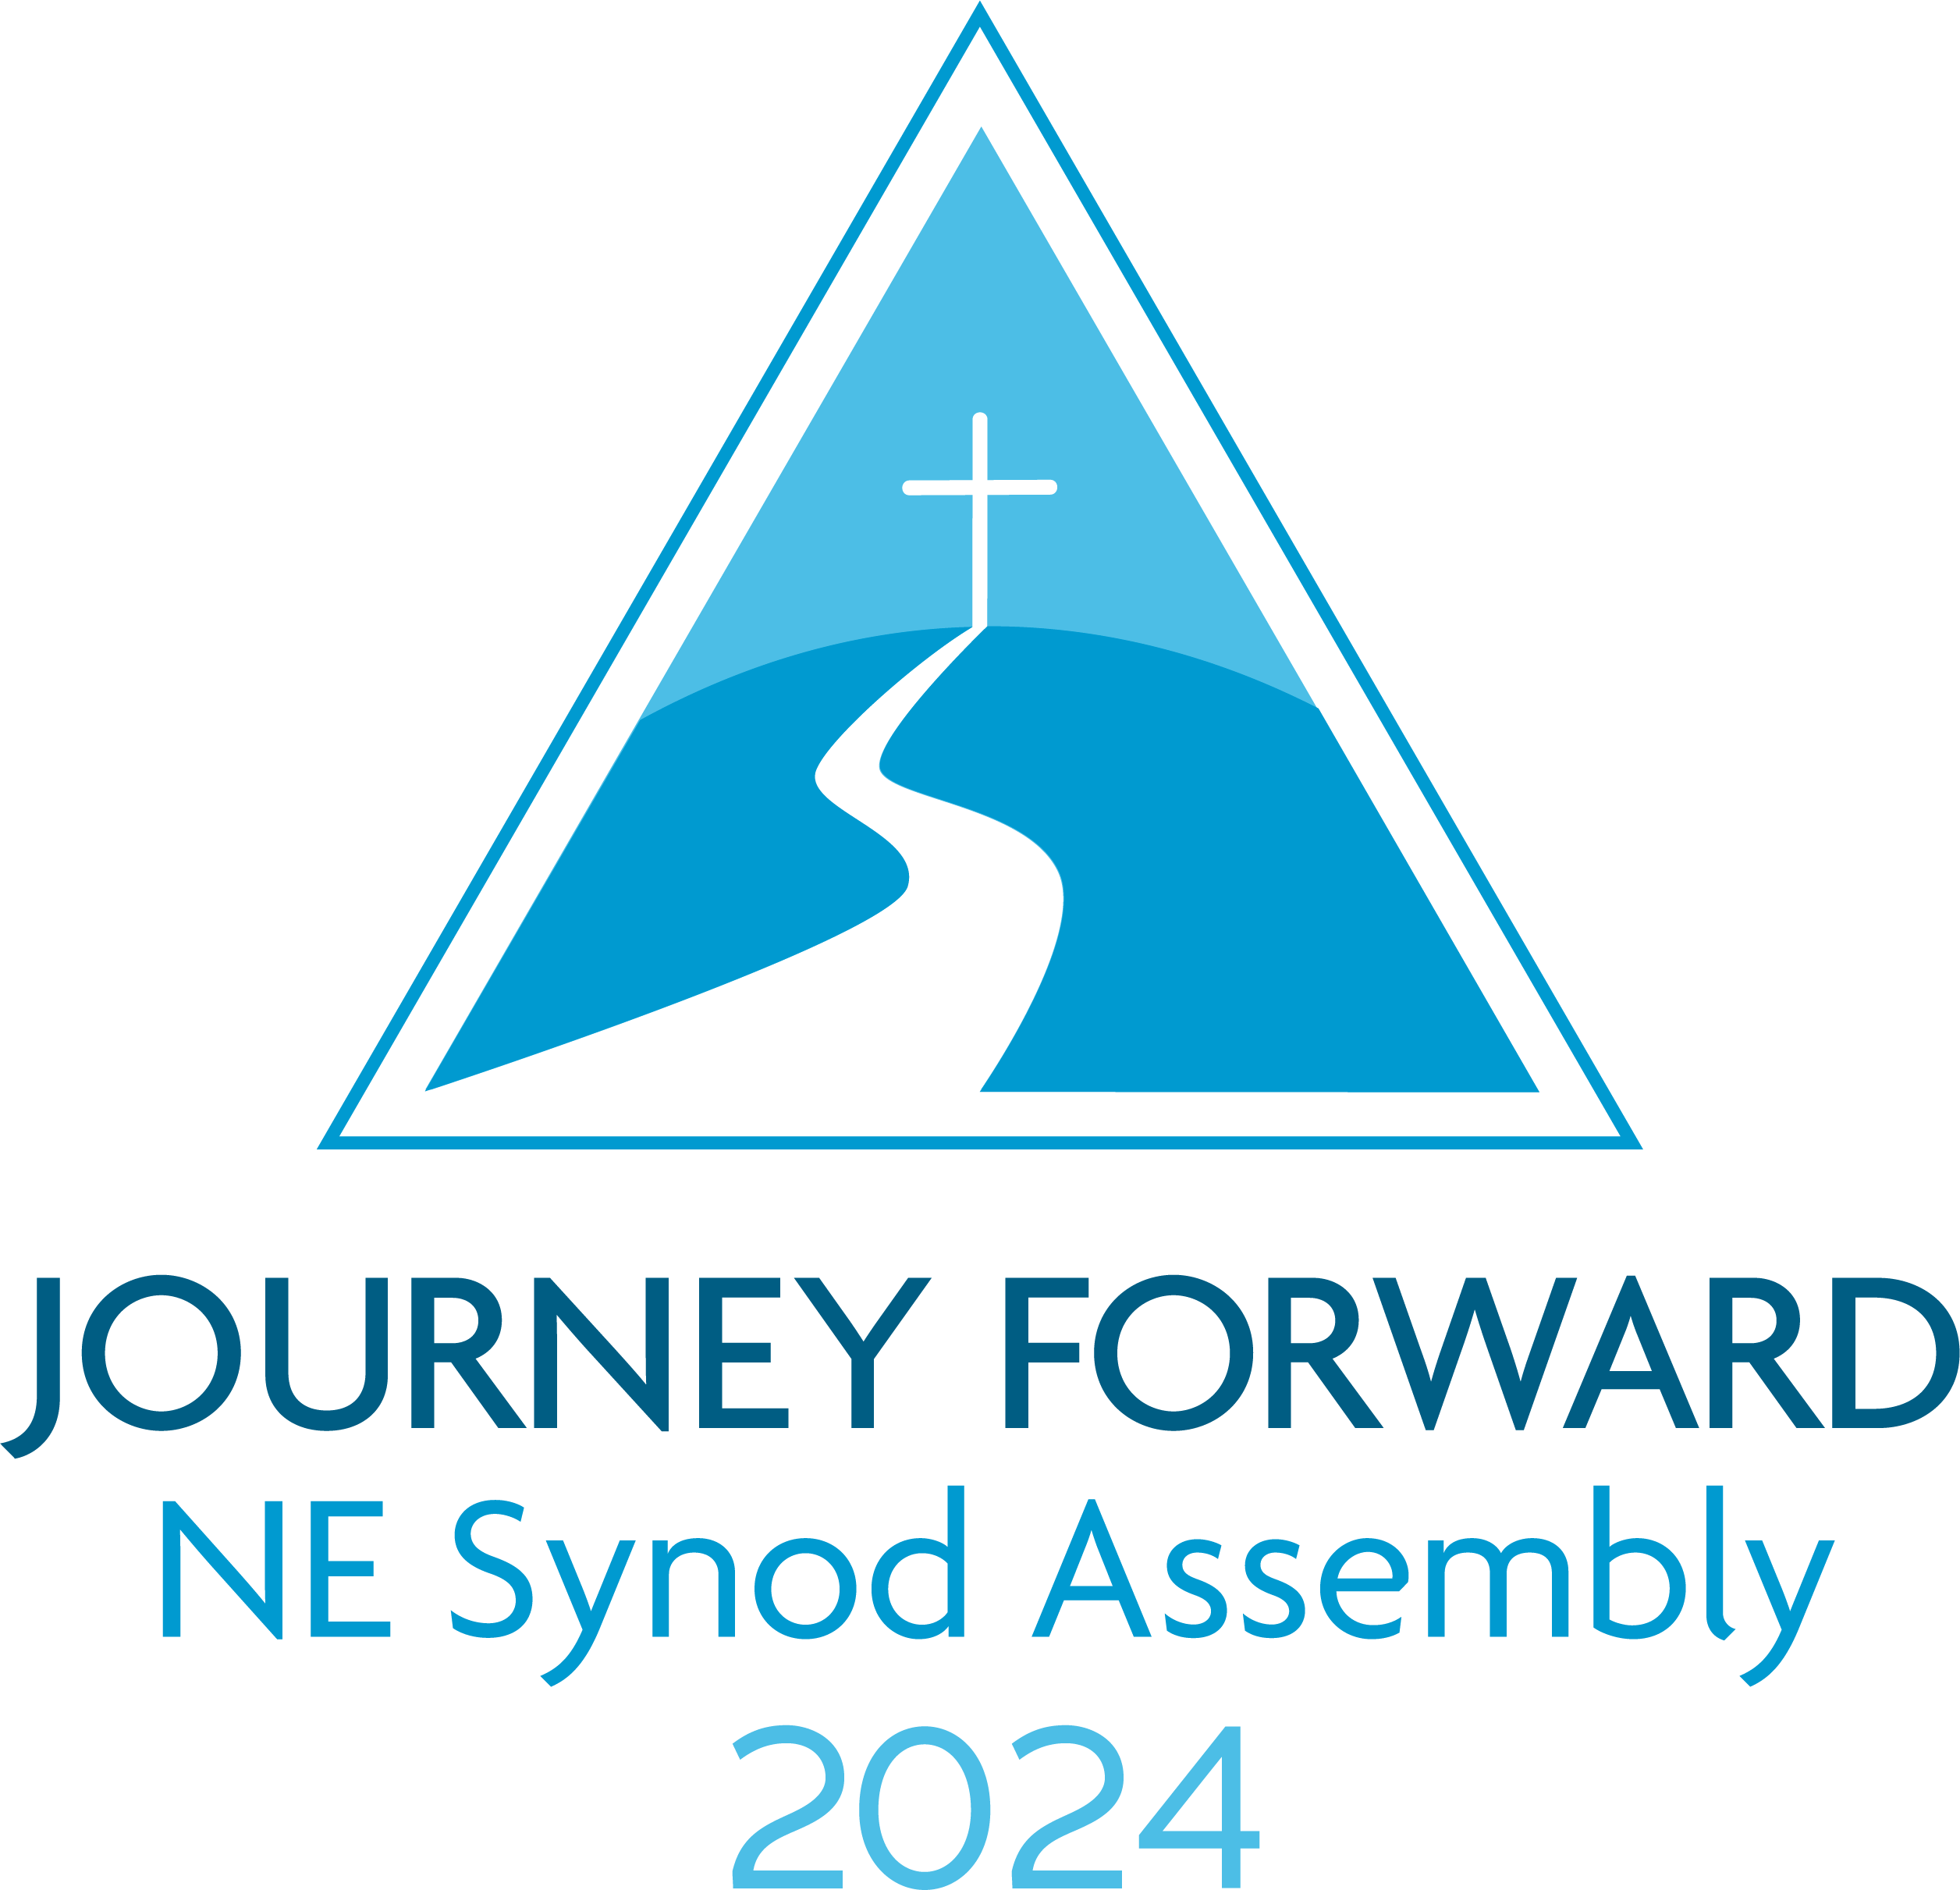 Synod Assembly 2024